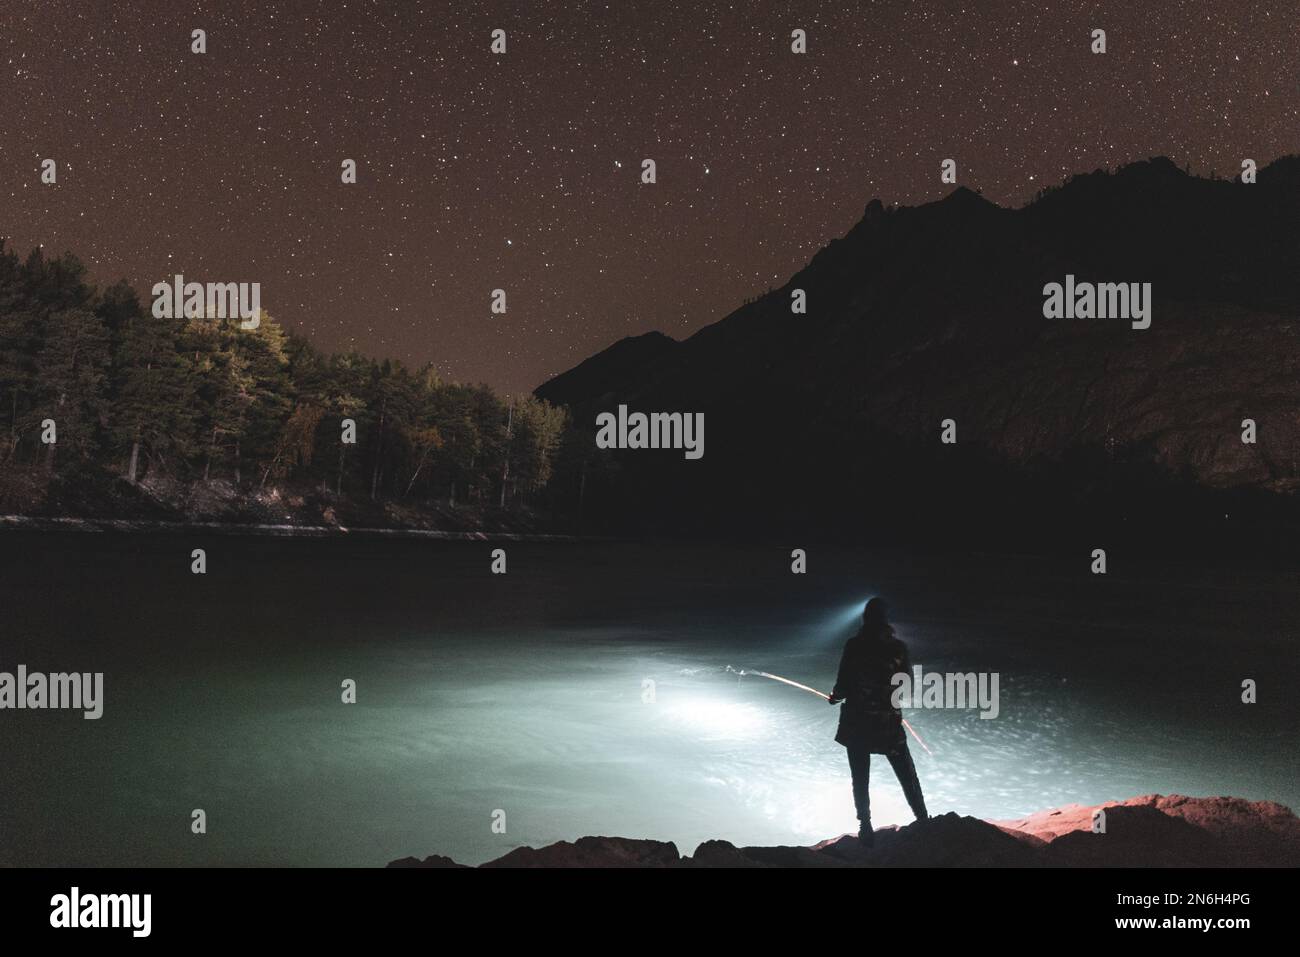 La silhouette di una ragazza pescatore con lanterna di notte si erge con una canna da pesca sulla riva del fiume sotto una roccia con stelle nell'Altai in Siberia Foto Stock